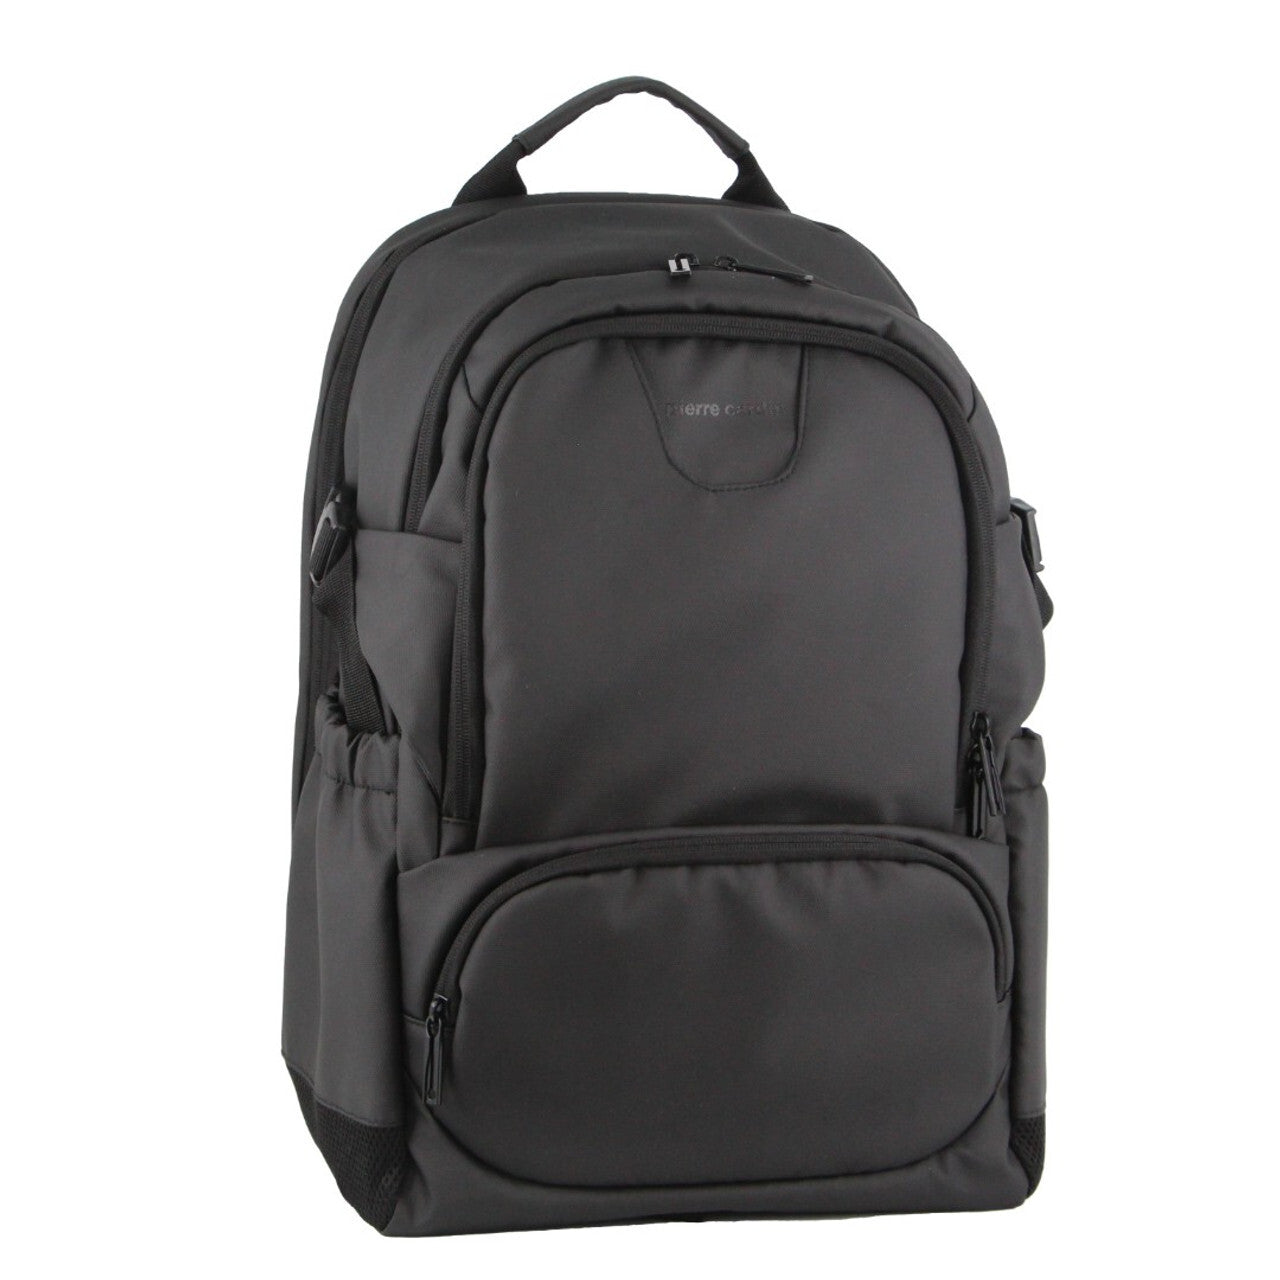 Backpack Bag Travel & Business Built-in USB Port Outdoor - Black